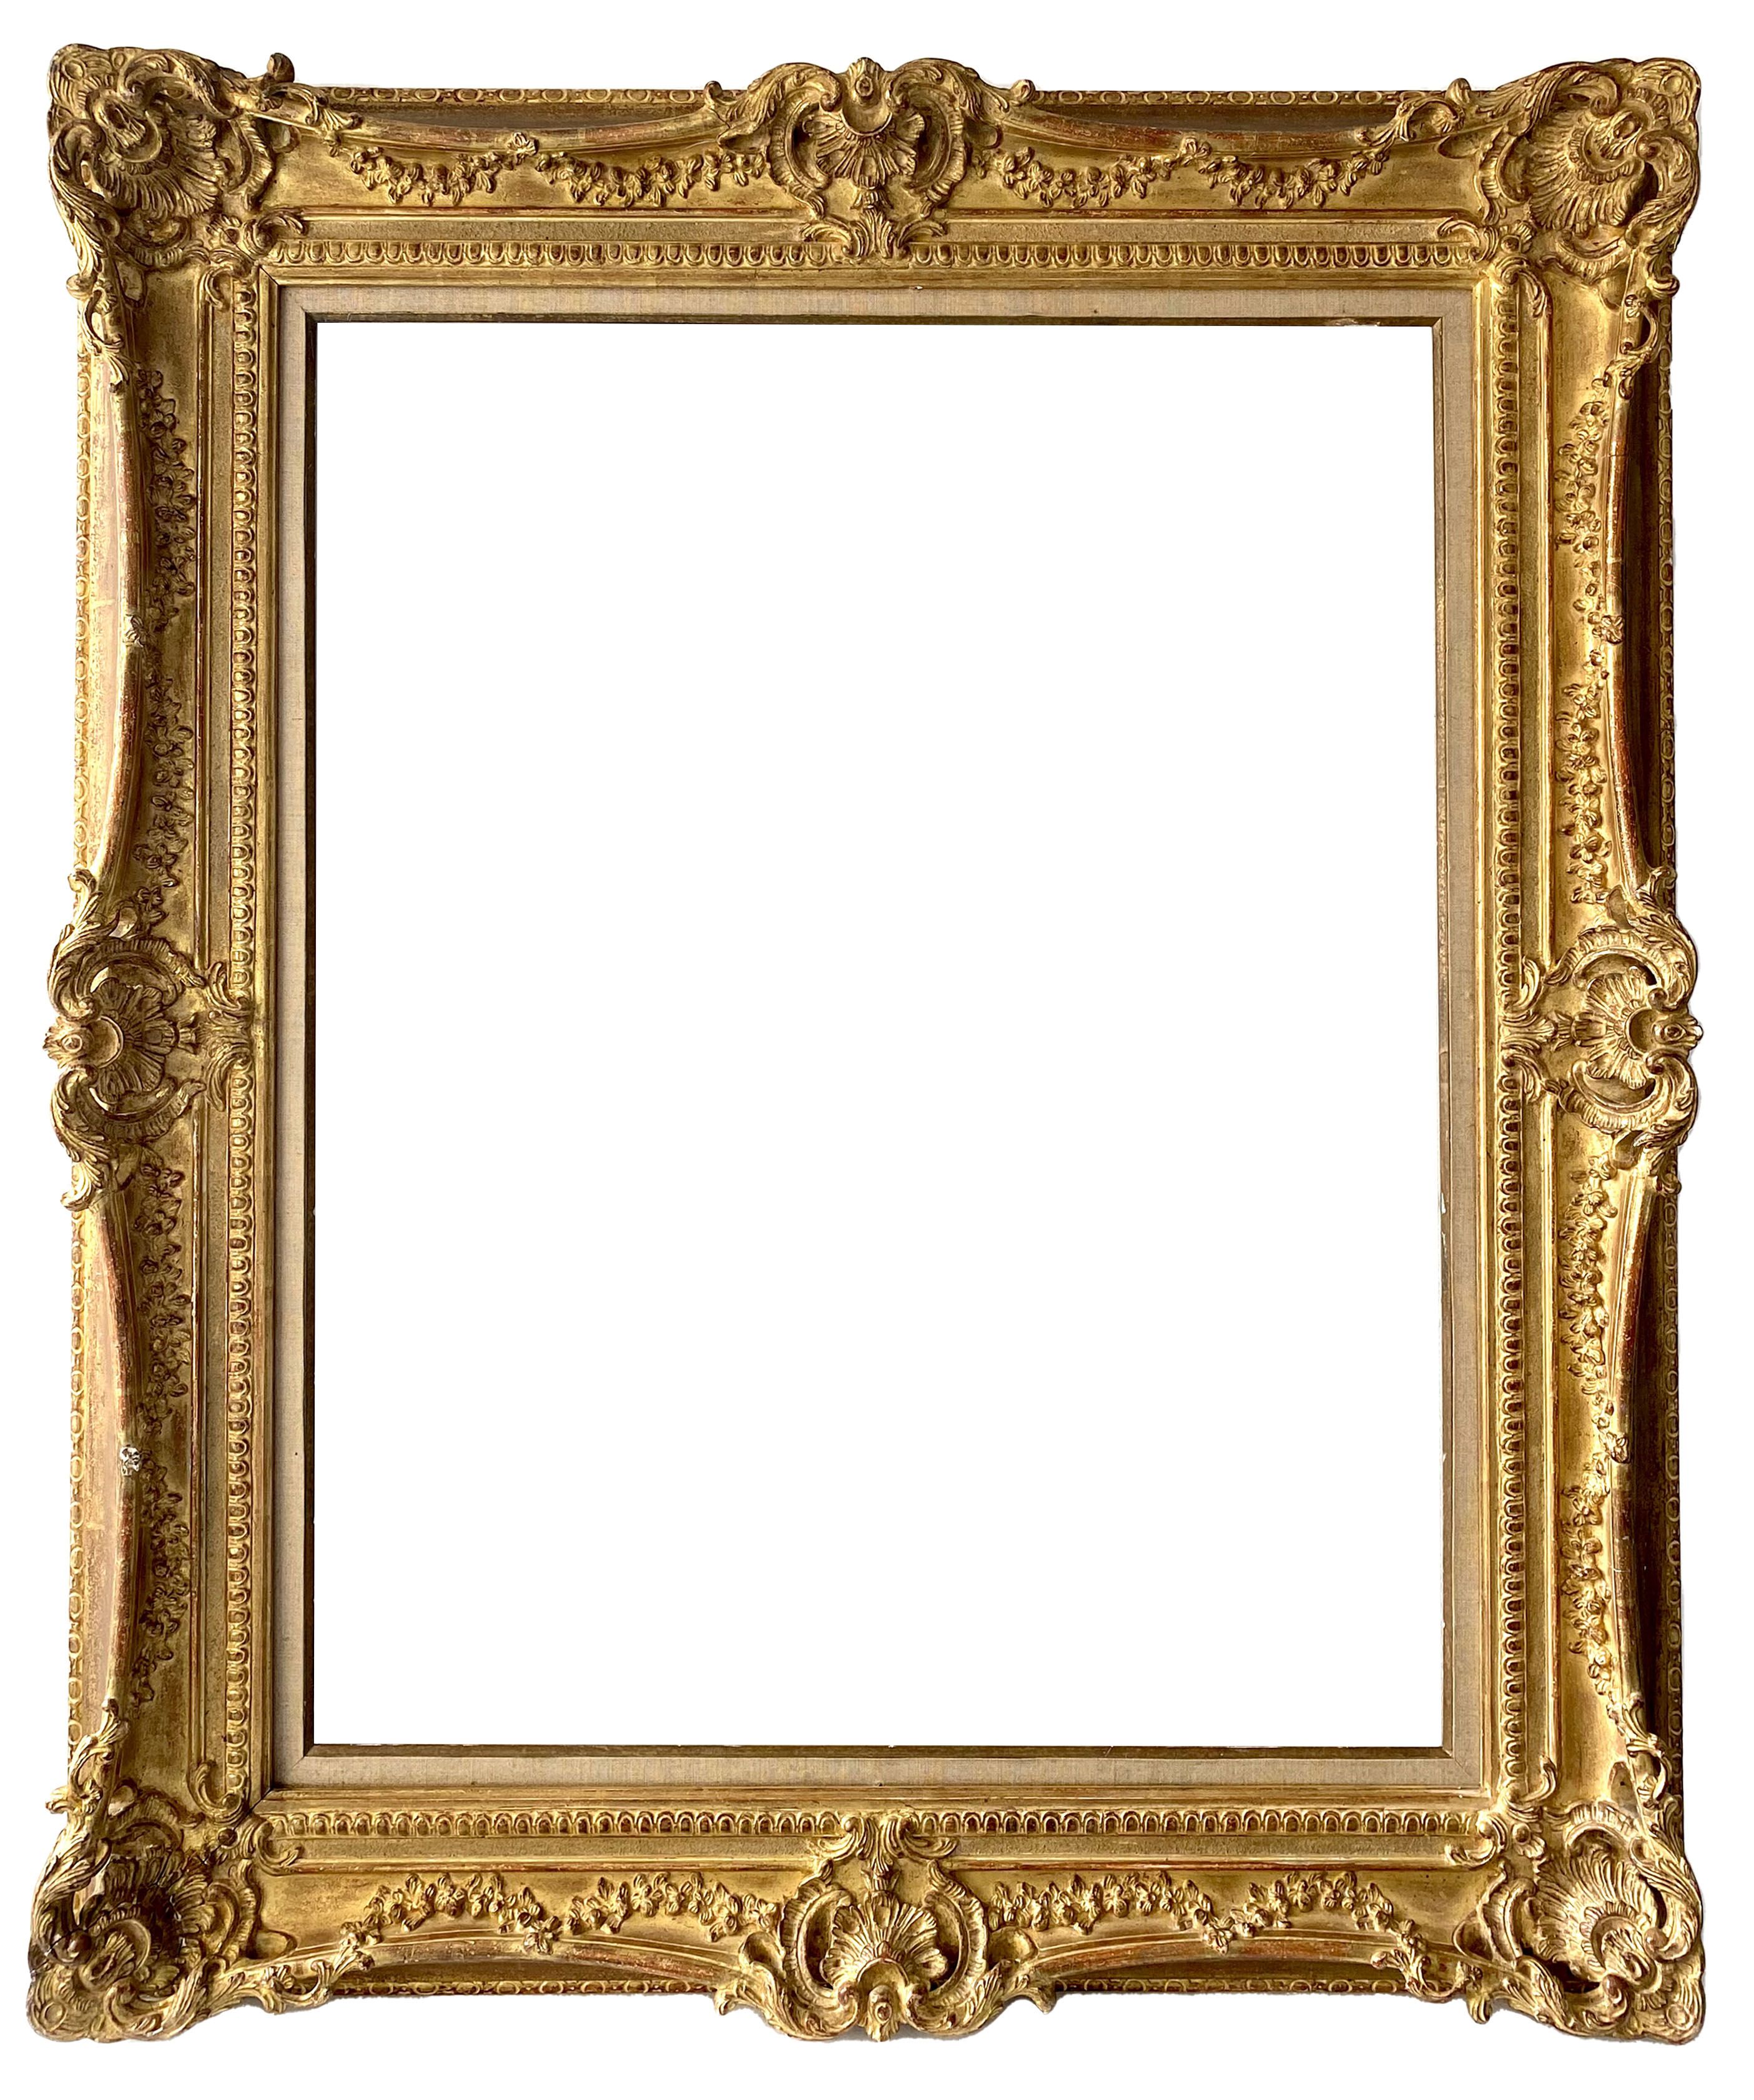 Cadre de style Louis XV - 92,69 x 73,40 - REF - 1515